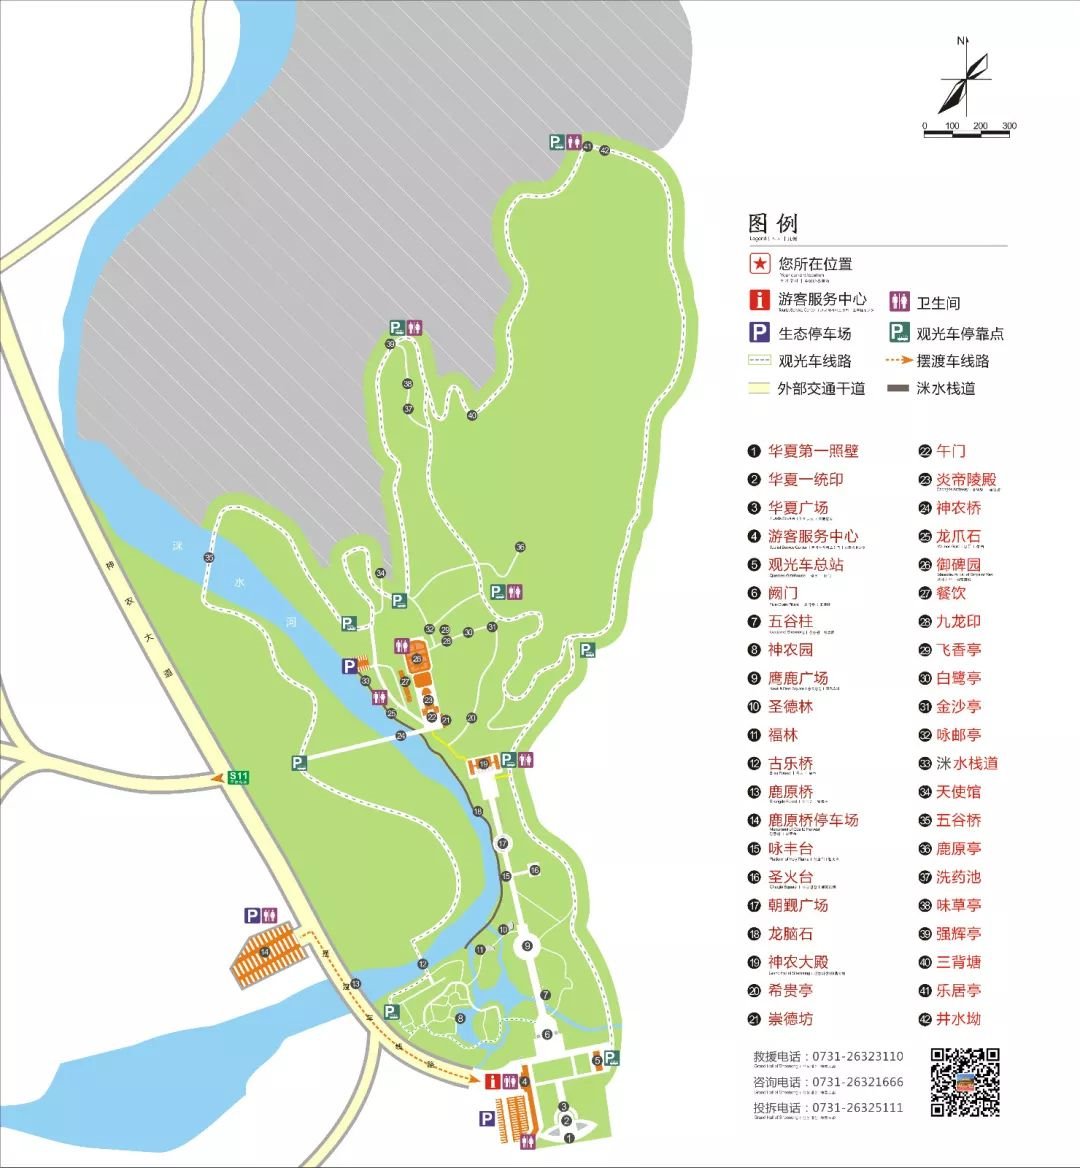 炎帝陵景区地图图片